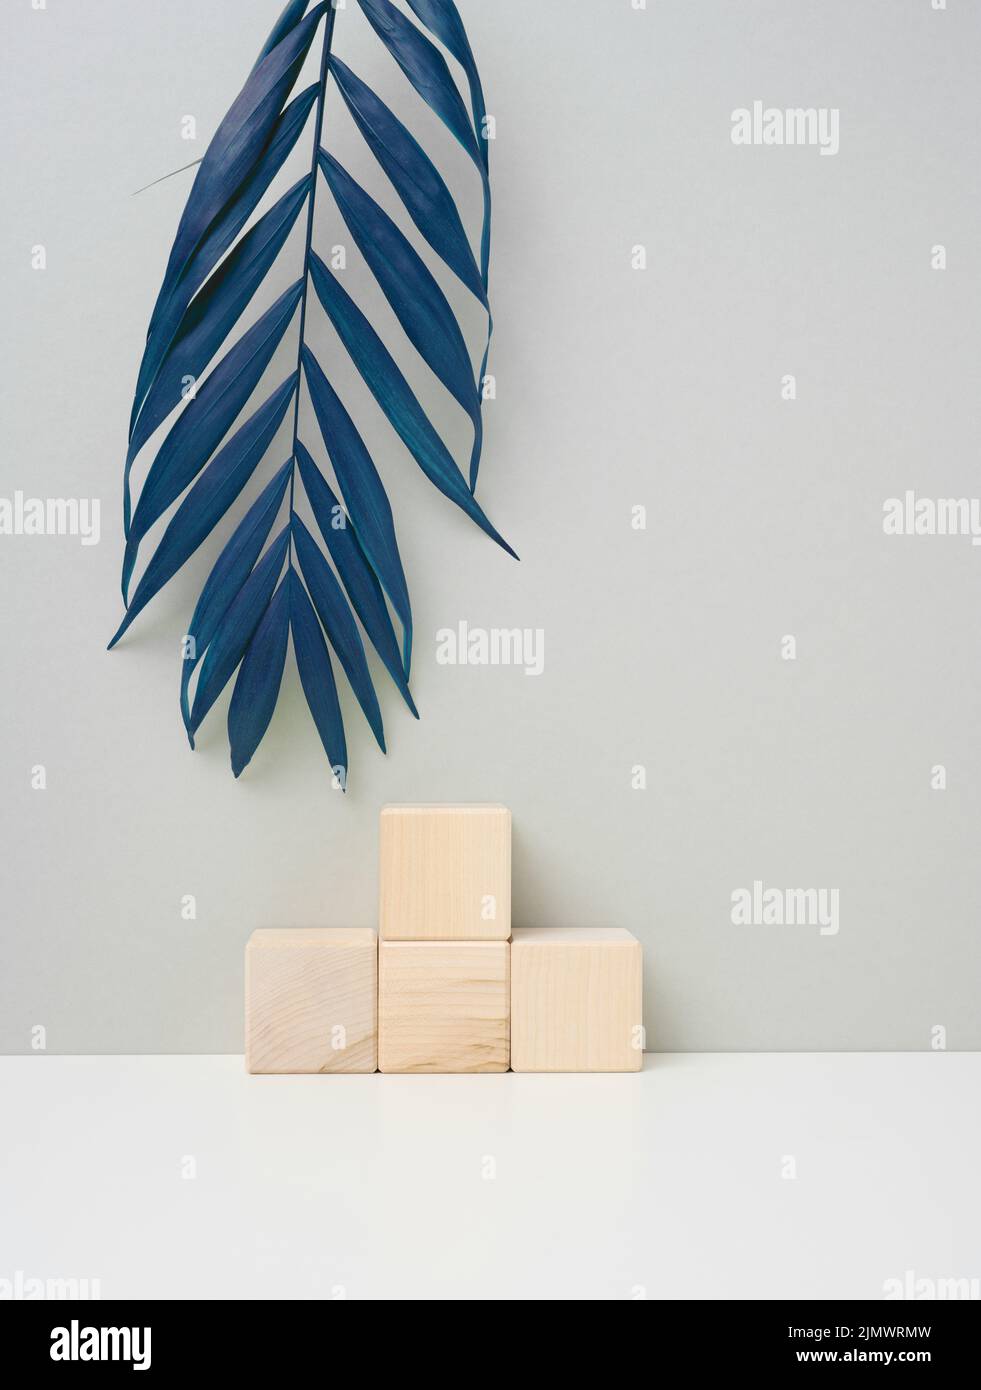 Cubo di legno su sfondo grigio con una foglia di palma blu. Palcoscenico per la dimostrazione del prodotto, cosmetici. Promozione e pubblicità Foto Stock